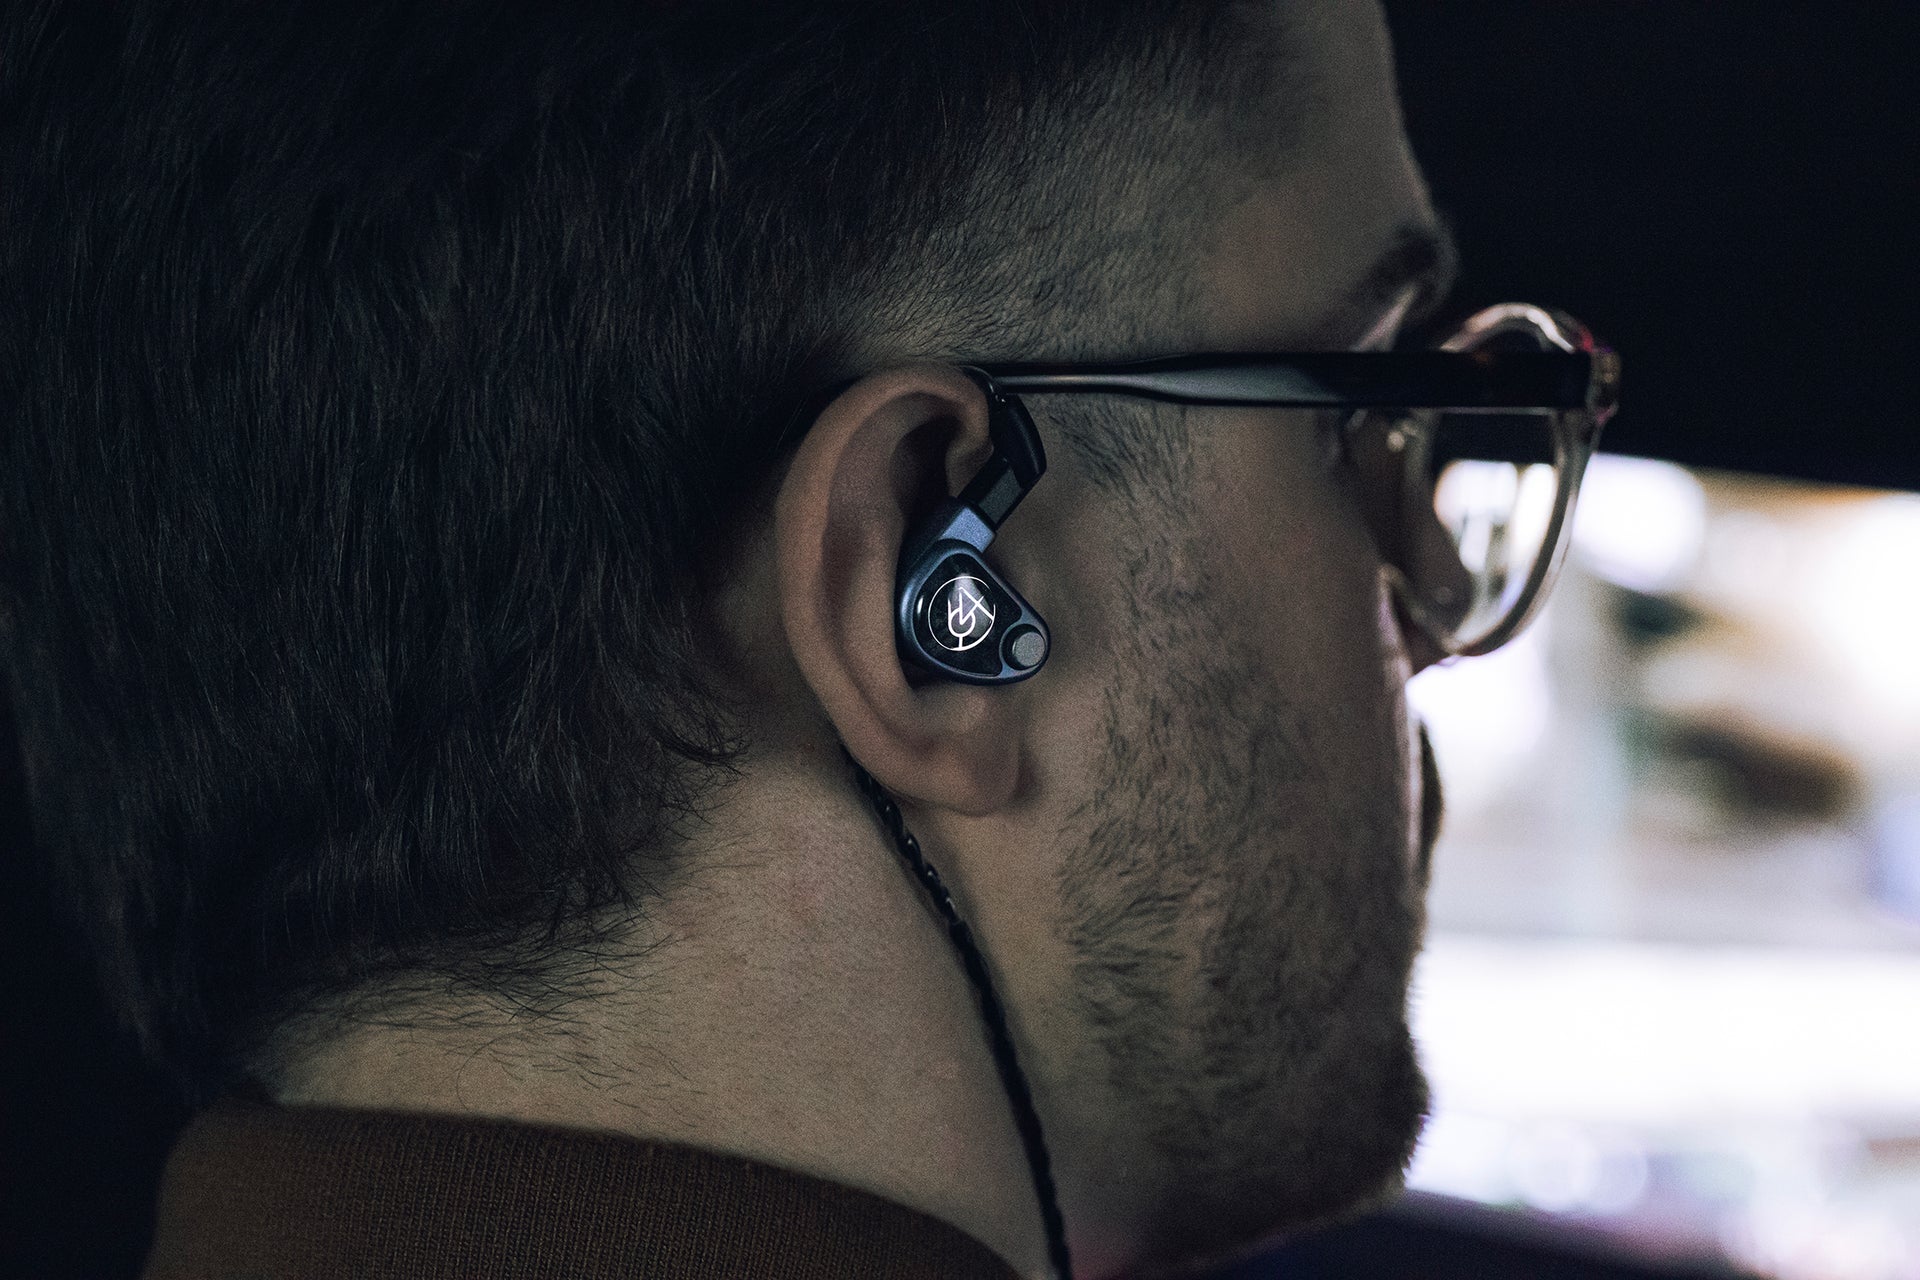 64 audio u4s in-ear headphones in right ear of human male